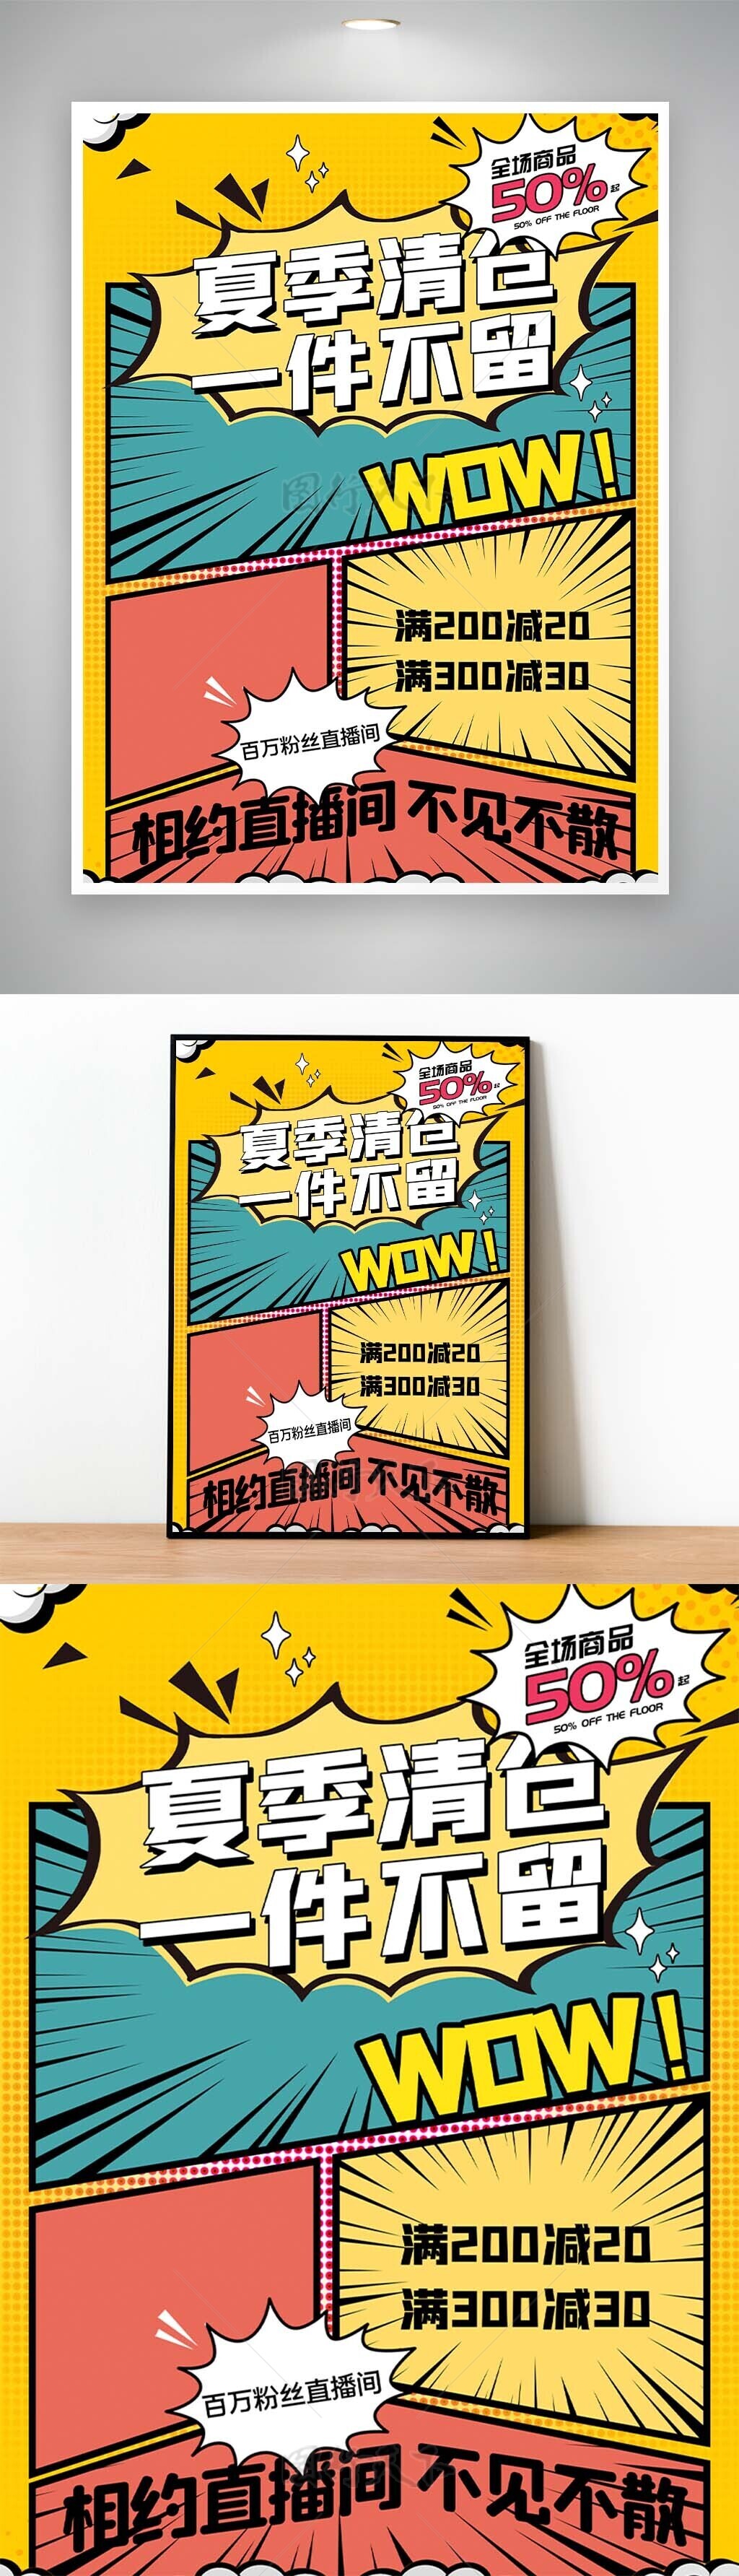 夏季清仓一件不留漫画风直播宣传海报